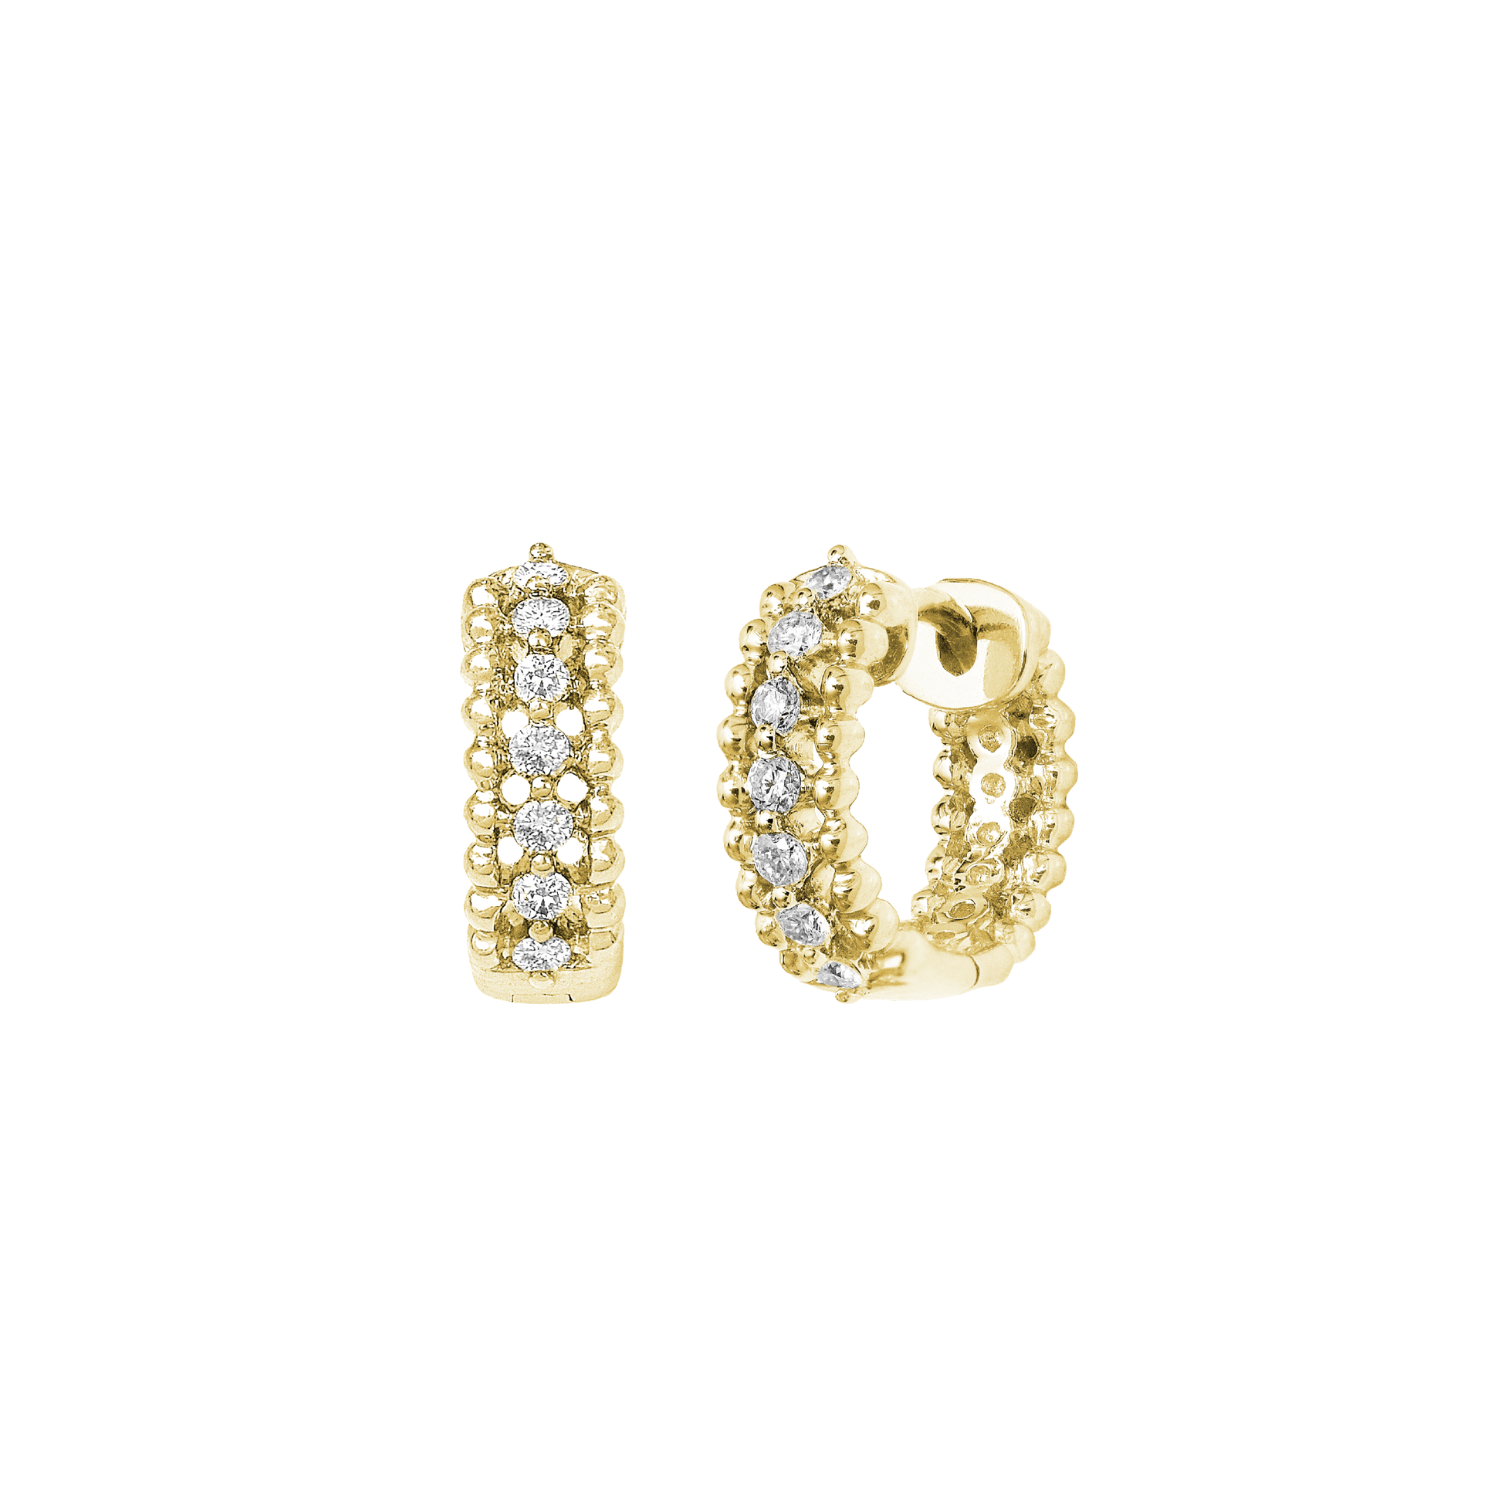 Elégantes boucles d'oreilles créoles en or jaune et diamants portées par Meghan Markle et d'autres célébrités. Bijou cadeau idéal pour un anniversaire, mariage ou fiançailles.